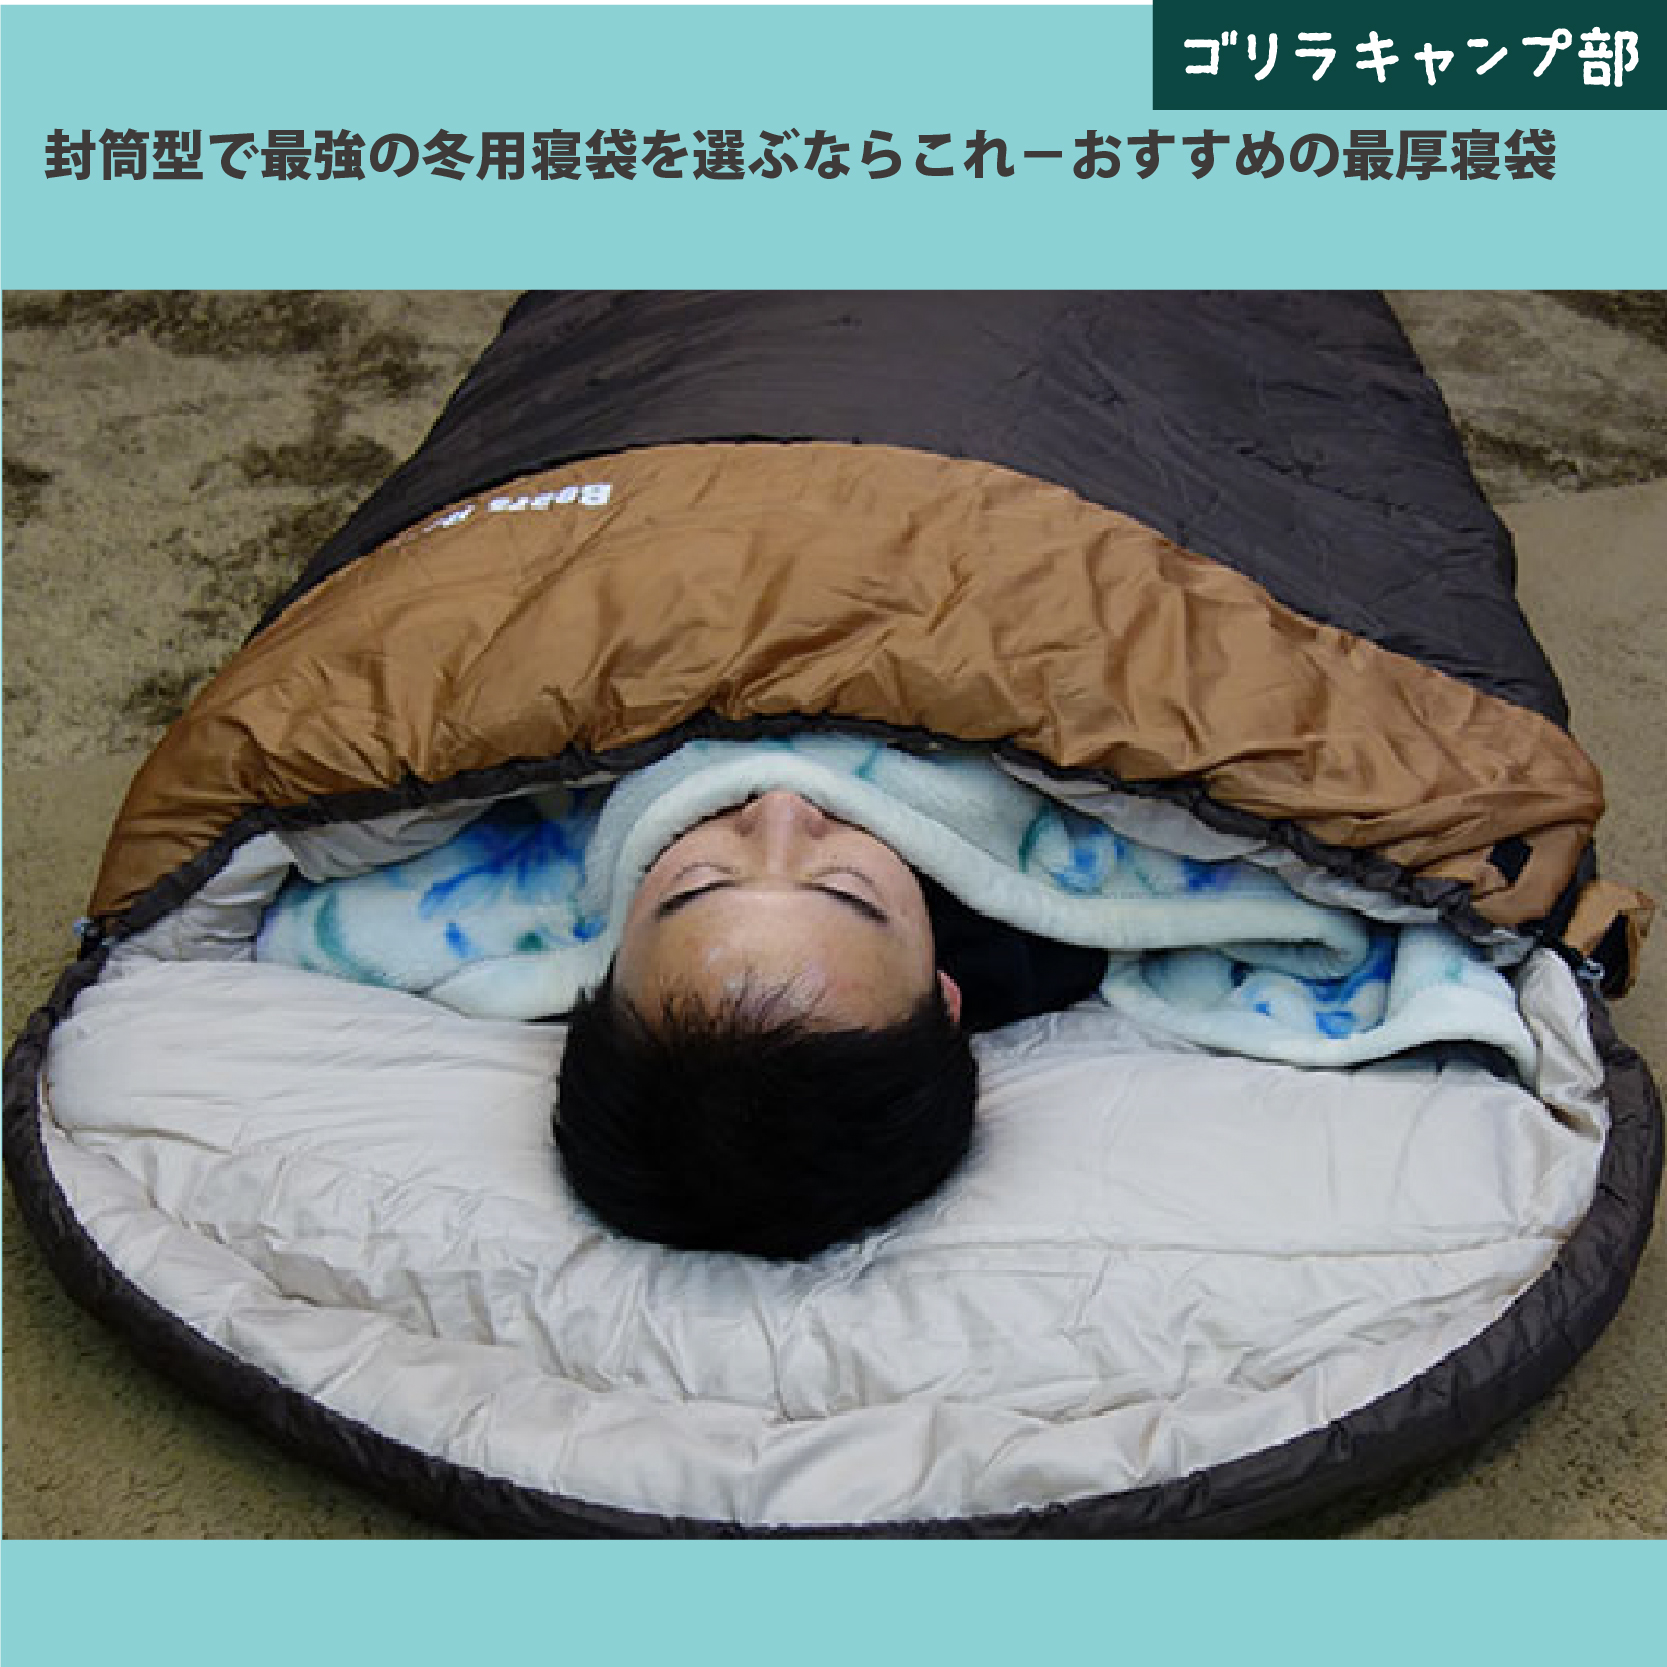 寝袋に湯たんぽ・カイロを使った寒さ対策―冬キャンプを想定した寝袋内の温度変化-ゴリラキャンプ部